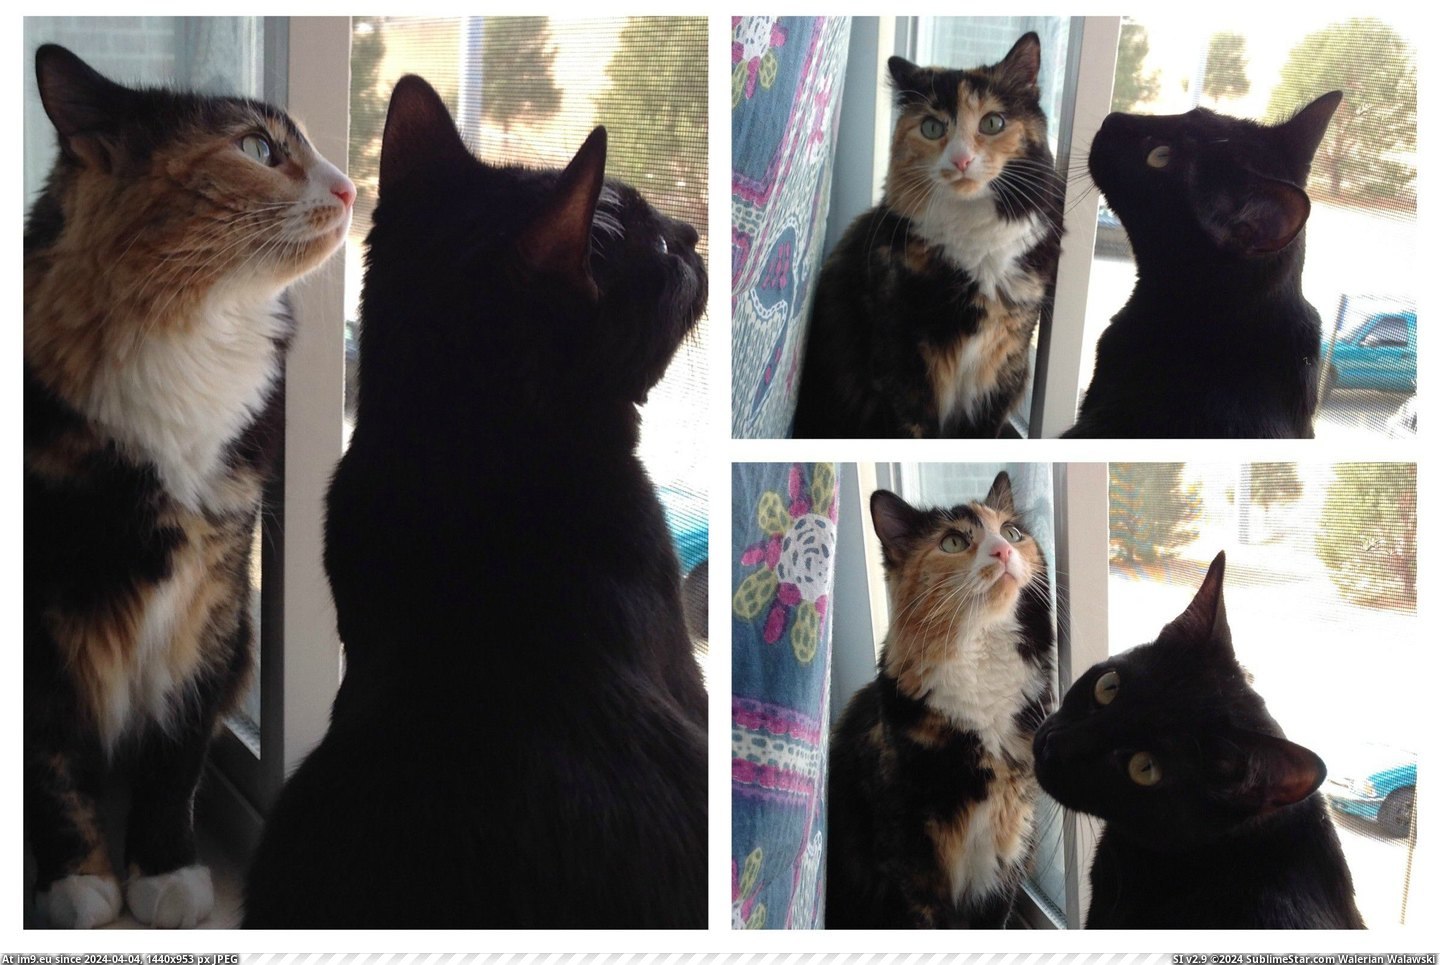 #Cats #Kitties #Springtime #Pretty [Cats] Pretty kitties, springtime kitties Pic. (Image of album My r/CATS favs))